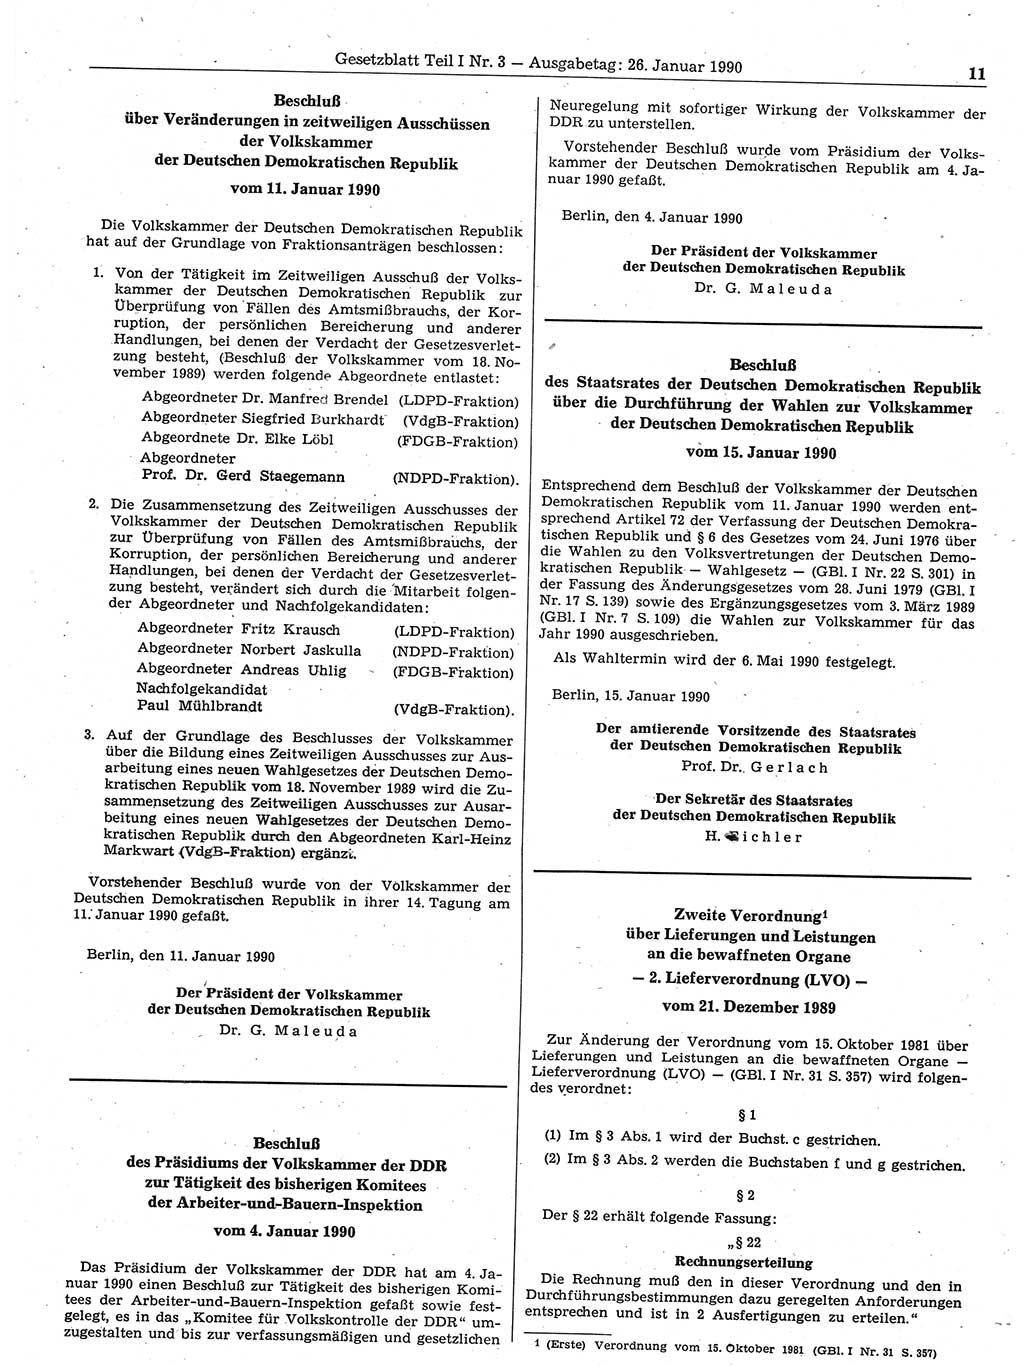 Gesetzblatt (GBl.) der Deutschen Demokratischen Republik (DDR) Teil Ⅰ 1990, Seite 11 (GBl. DDR Ⅰ 1990, S. 11)